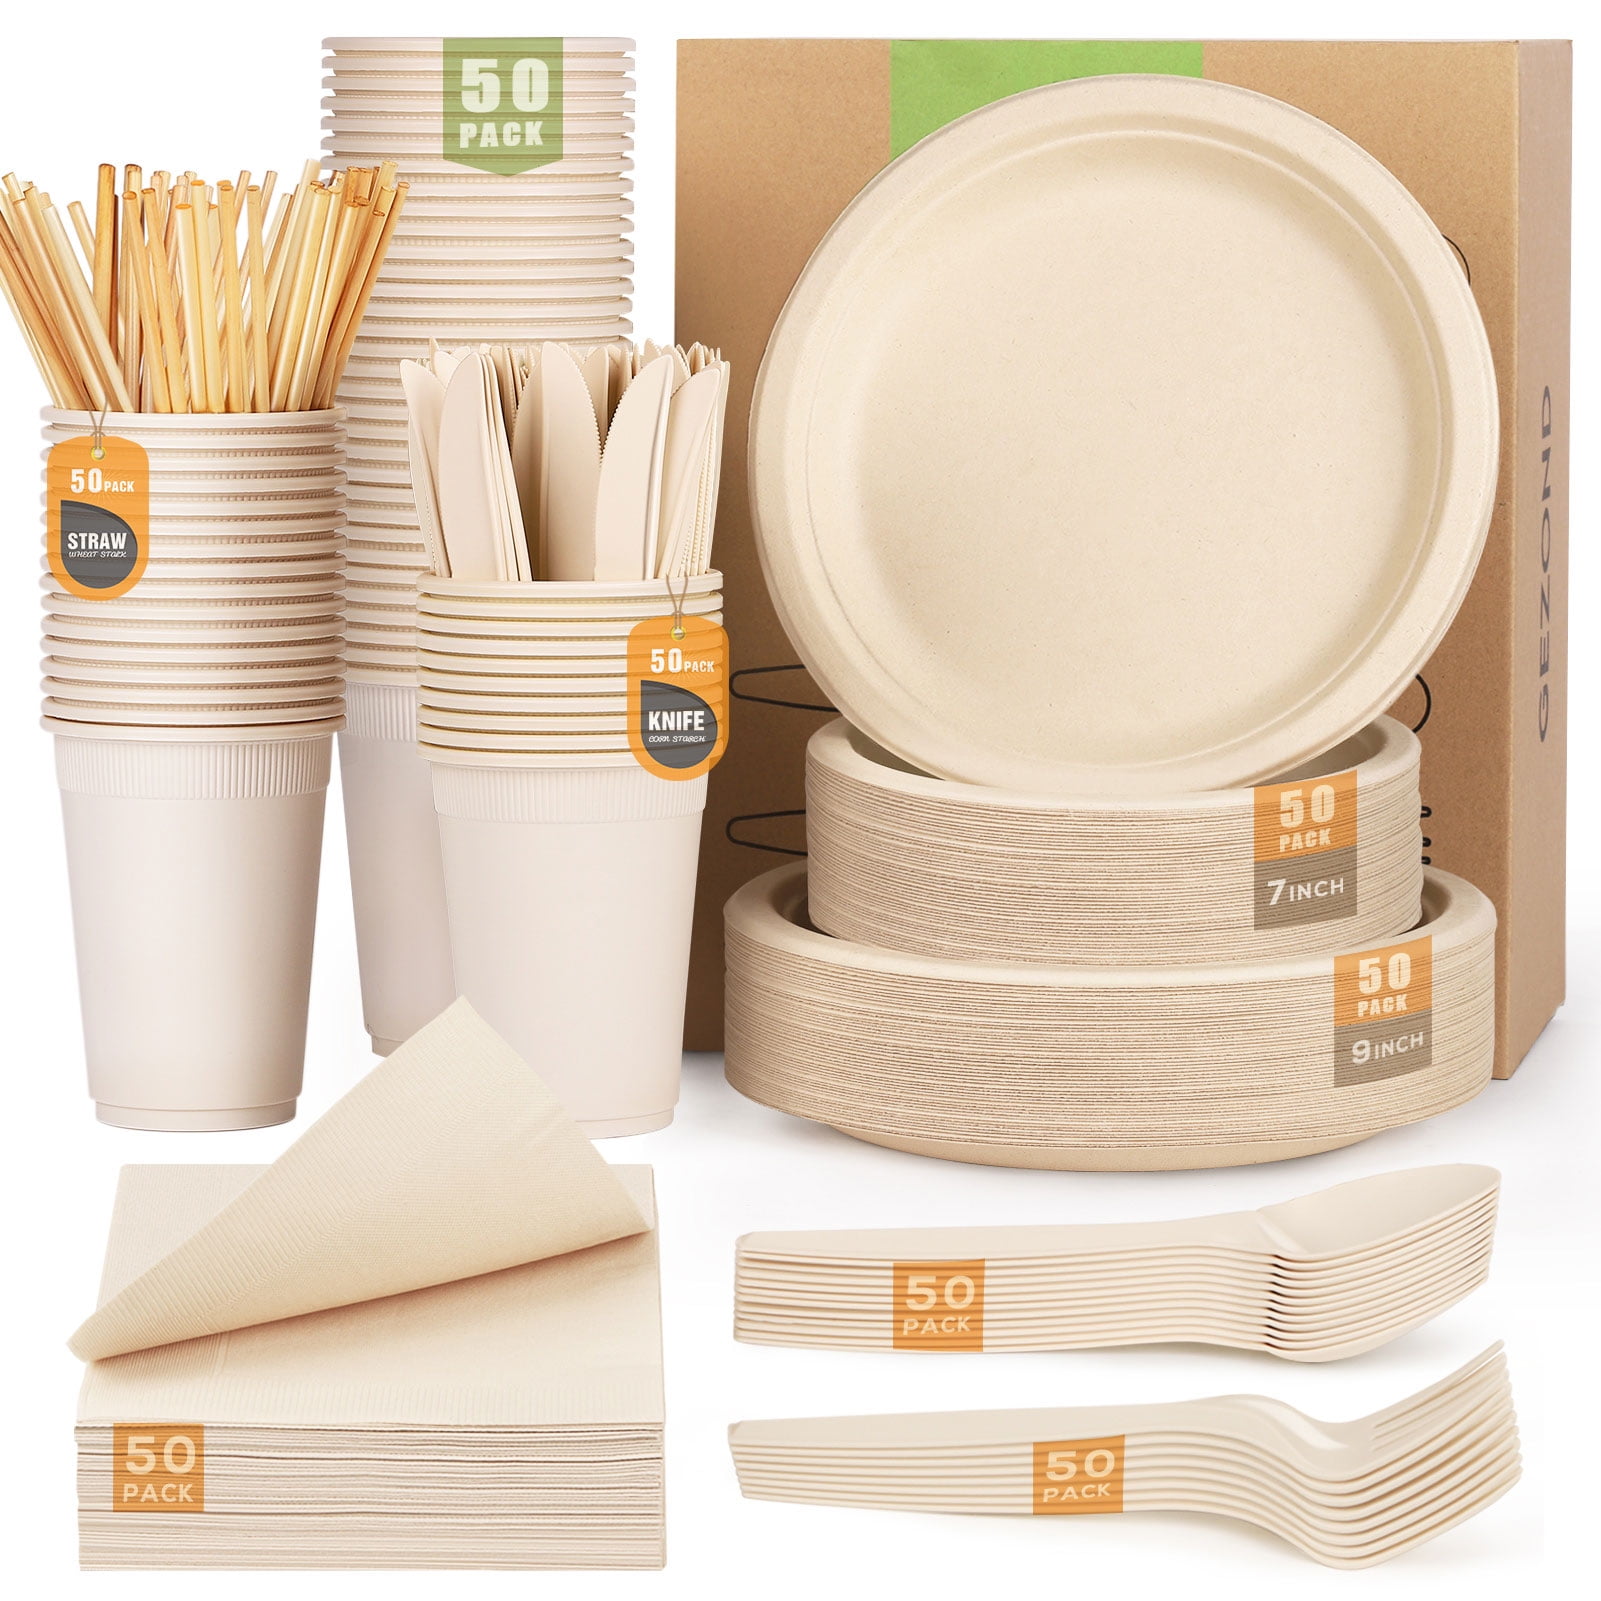 Fuyit 200 Piece Biodegradable Paper Plates Set, Disposable